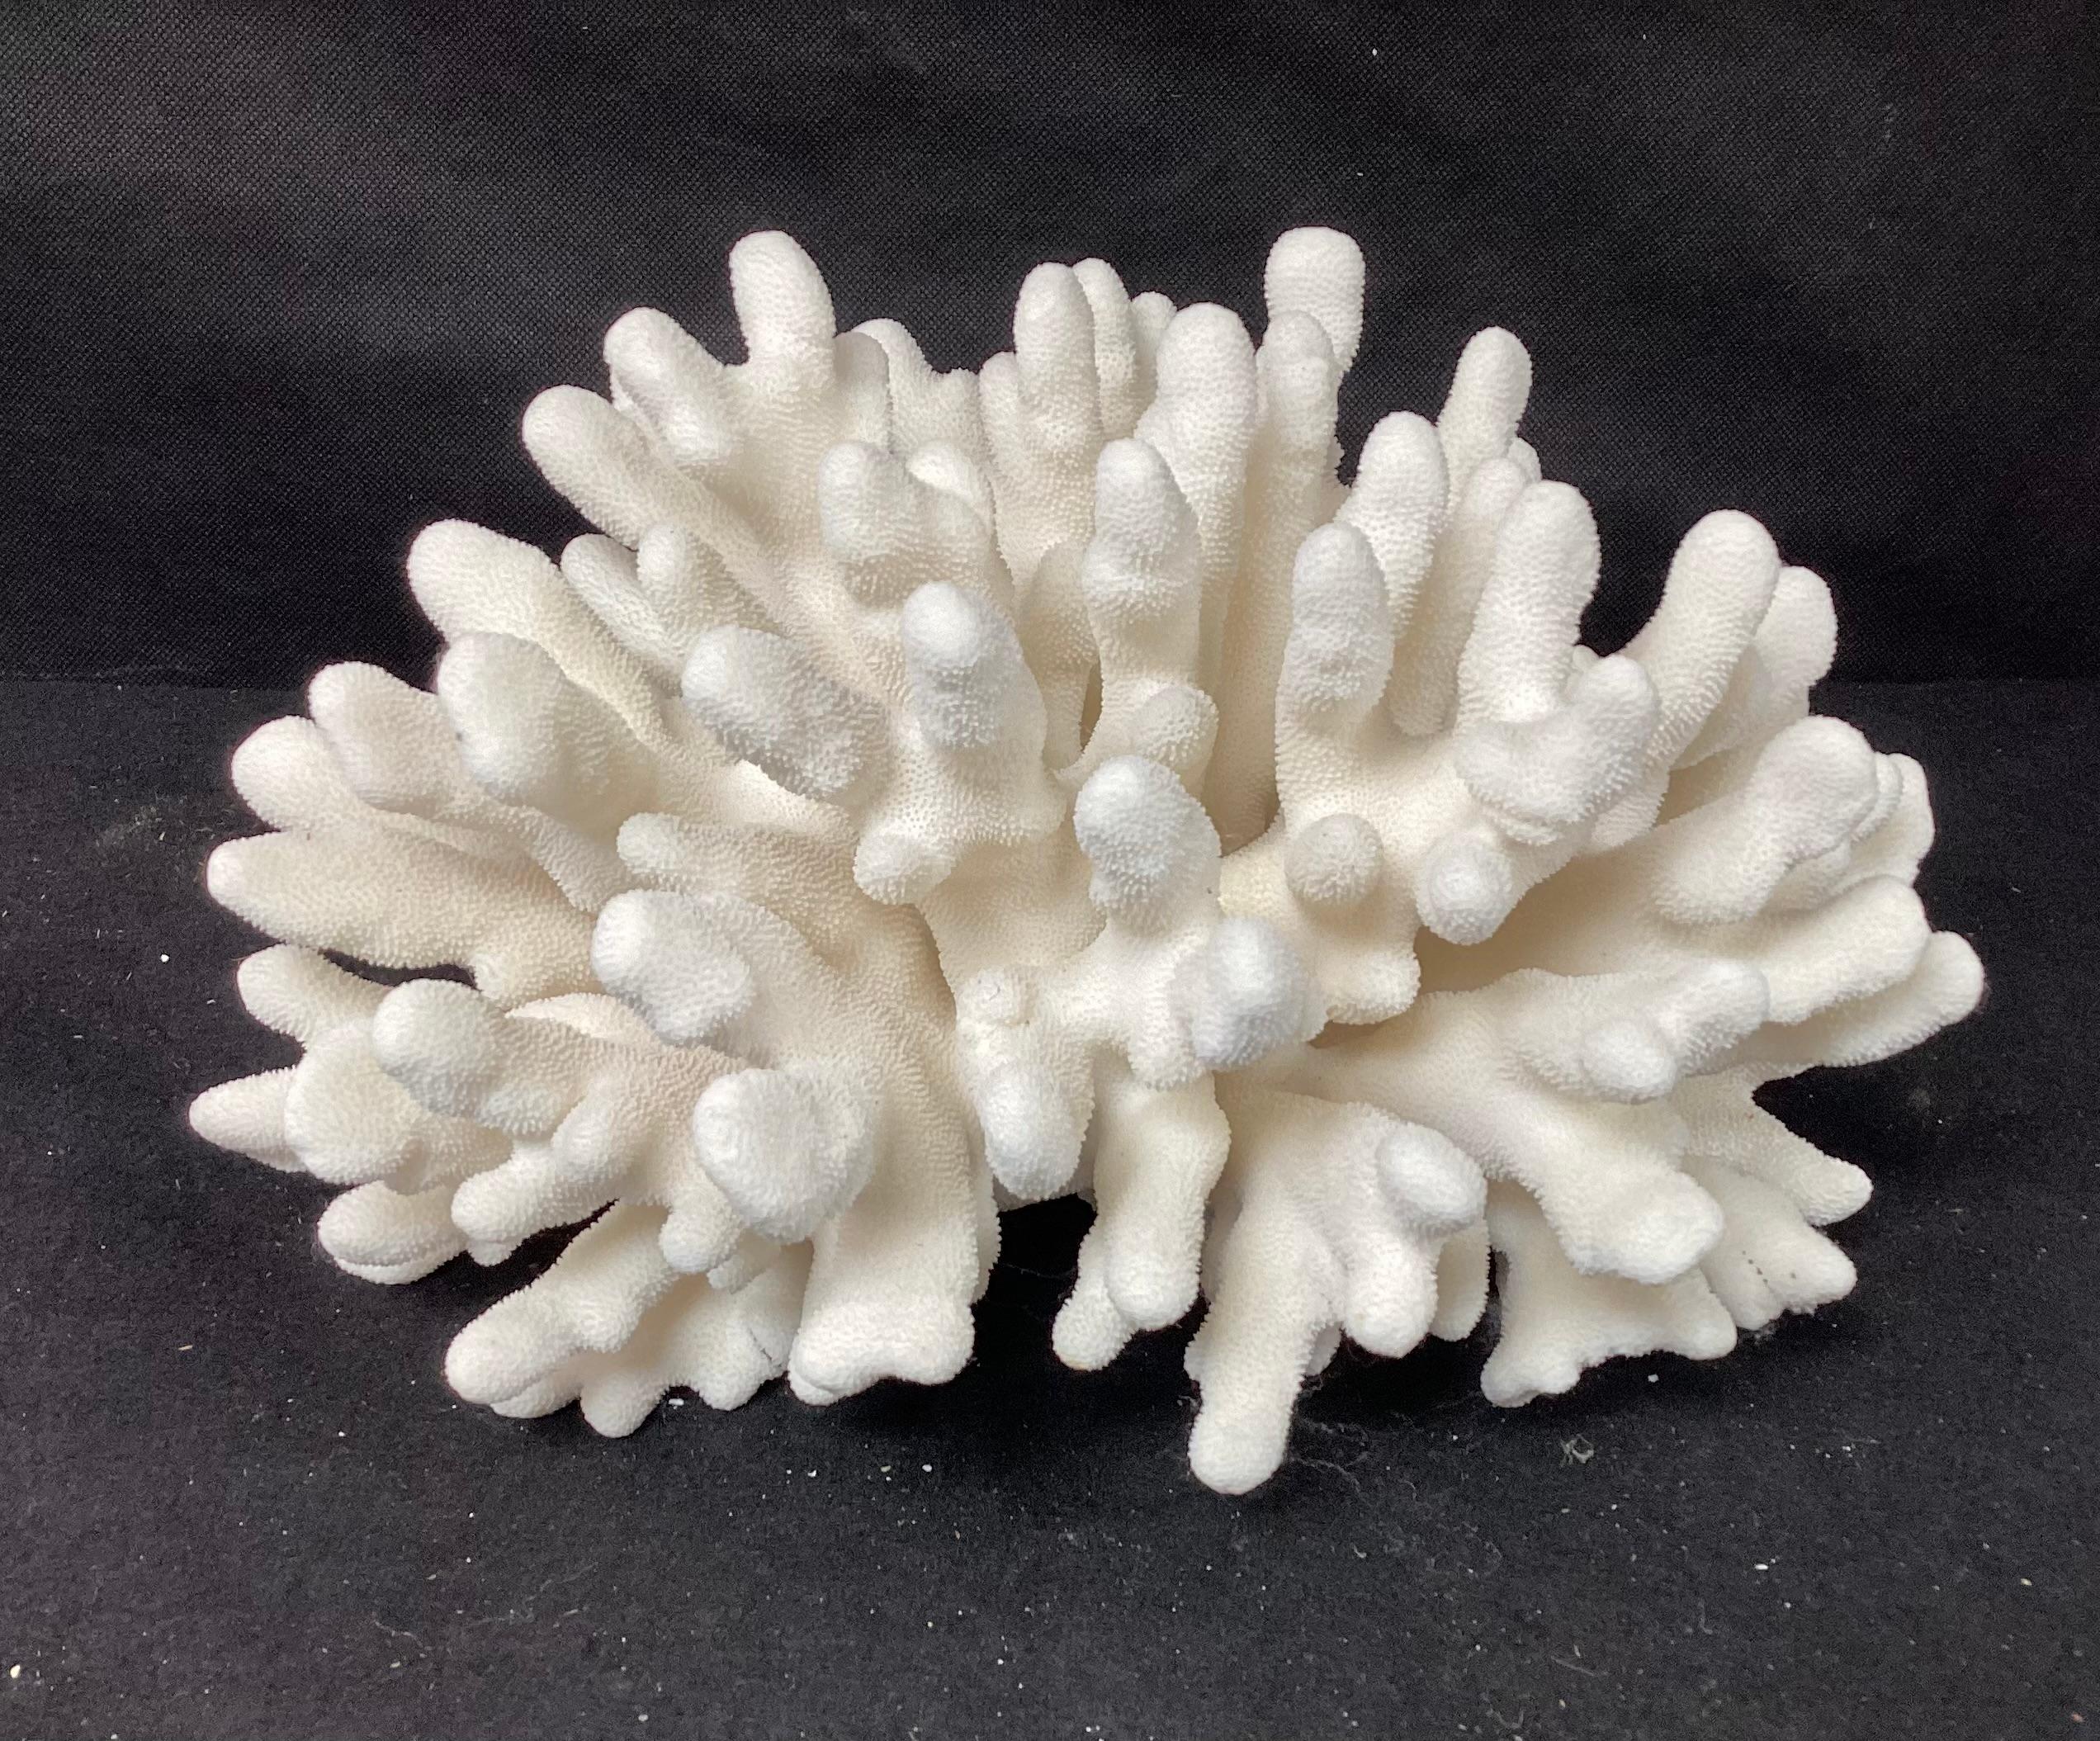 Organic Modern Natural White Elkhorn Coral Reef Specimen For Sale